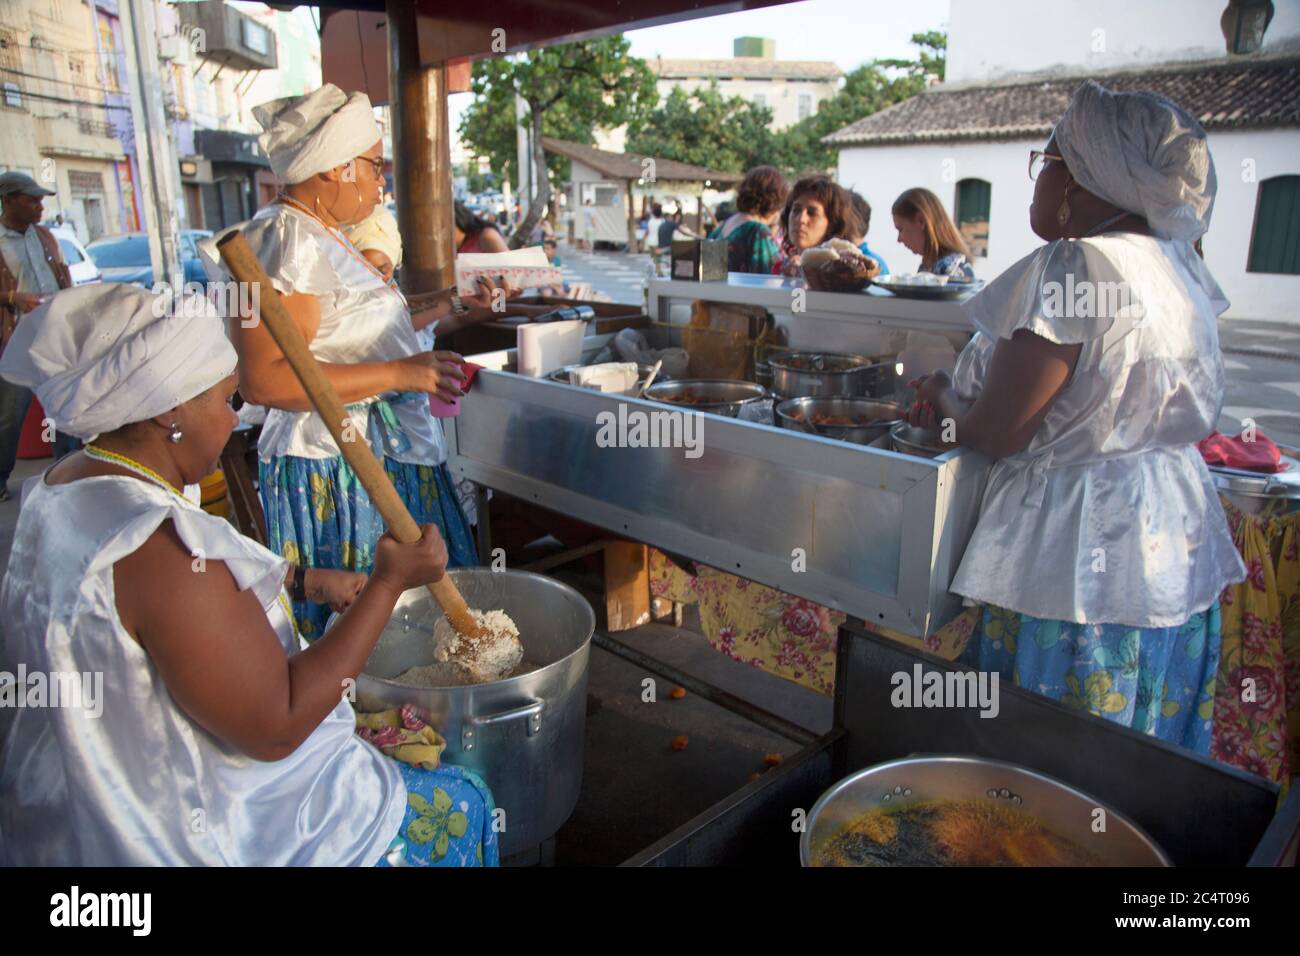 Venditori di cibo di strada Baianas noto fare acarajé, un piatto fatto di purè e fritti di piselli dagli occhi neri ripieni di gamberetti in Salvador de Bahia, Brasile. Foto Stock